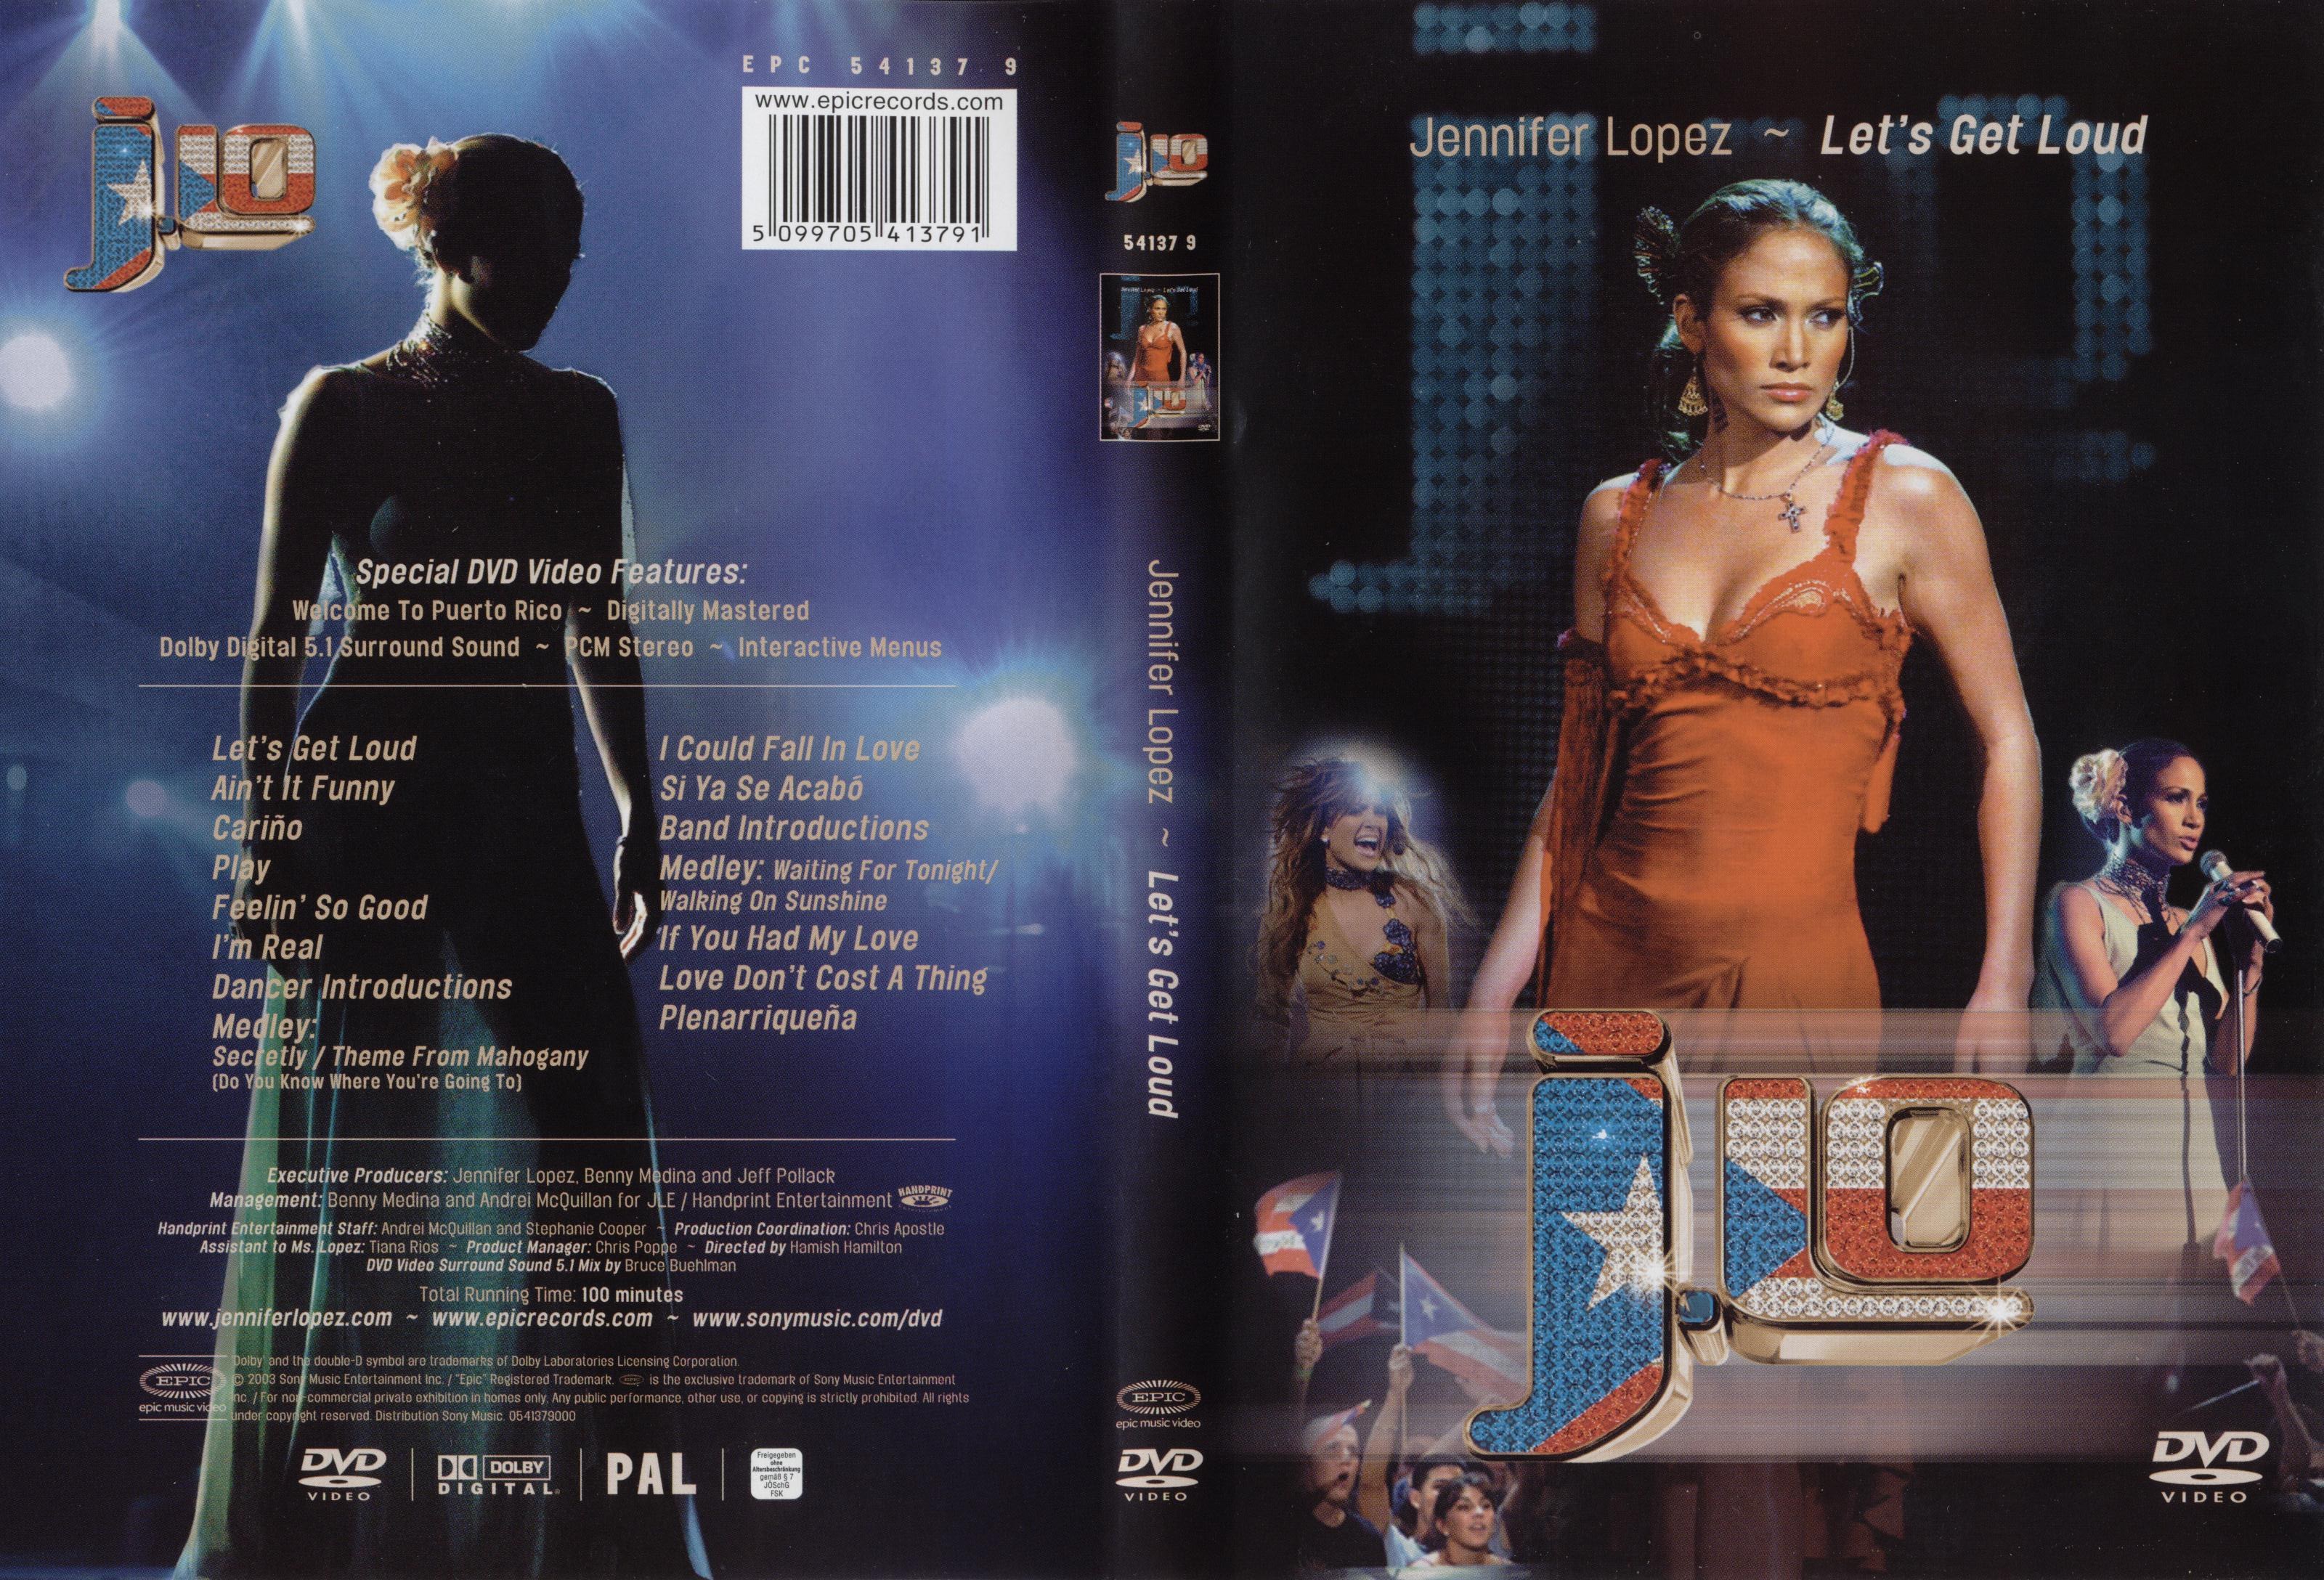 Jaquette DVD Jennifer Lopez Let